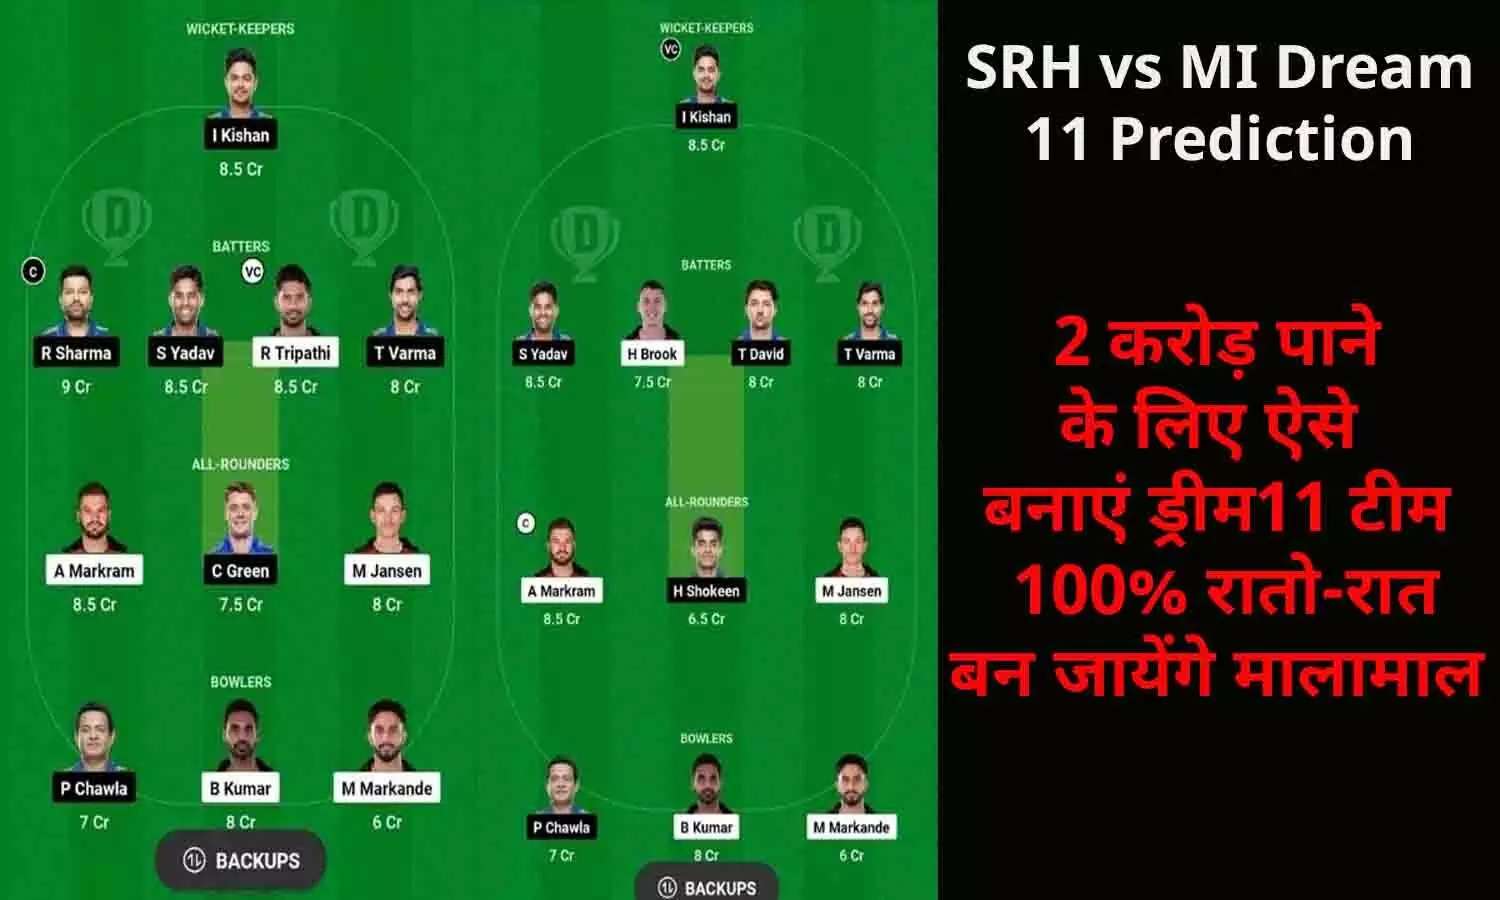 SRH vs MI Dream 11 Prediction In Hindi, Today Match: 2 करोड़ पाने के लिए ऐसे बनाएं ड्रीम11 टीम, 100% रातो-रात बन जायेंगे मालामाल